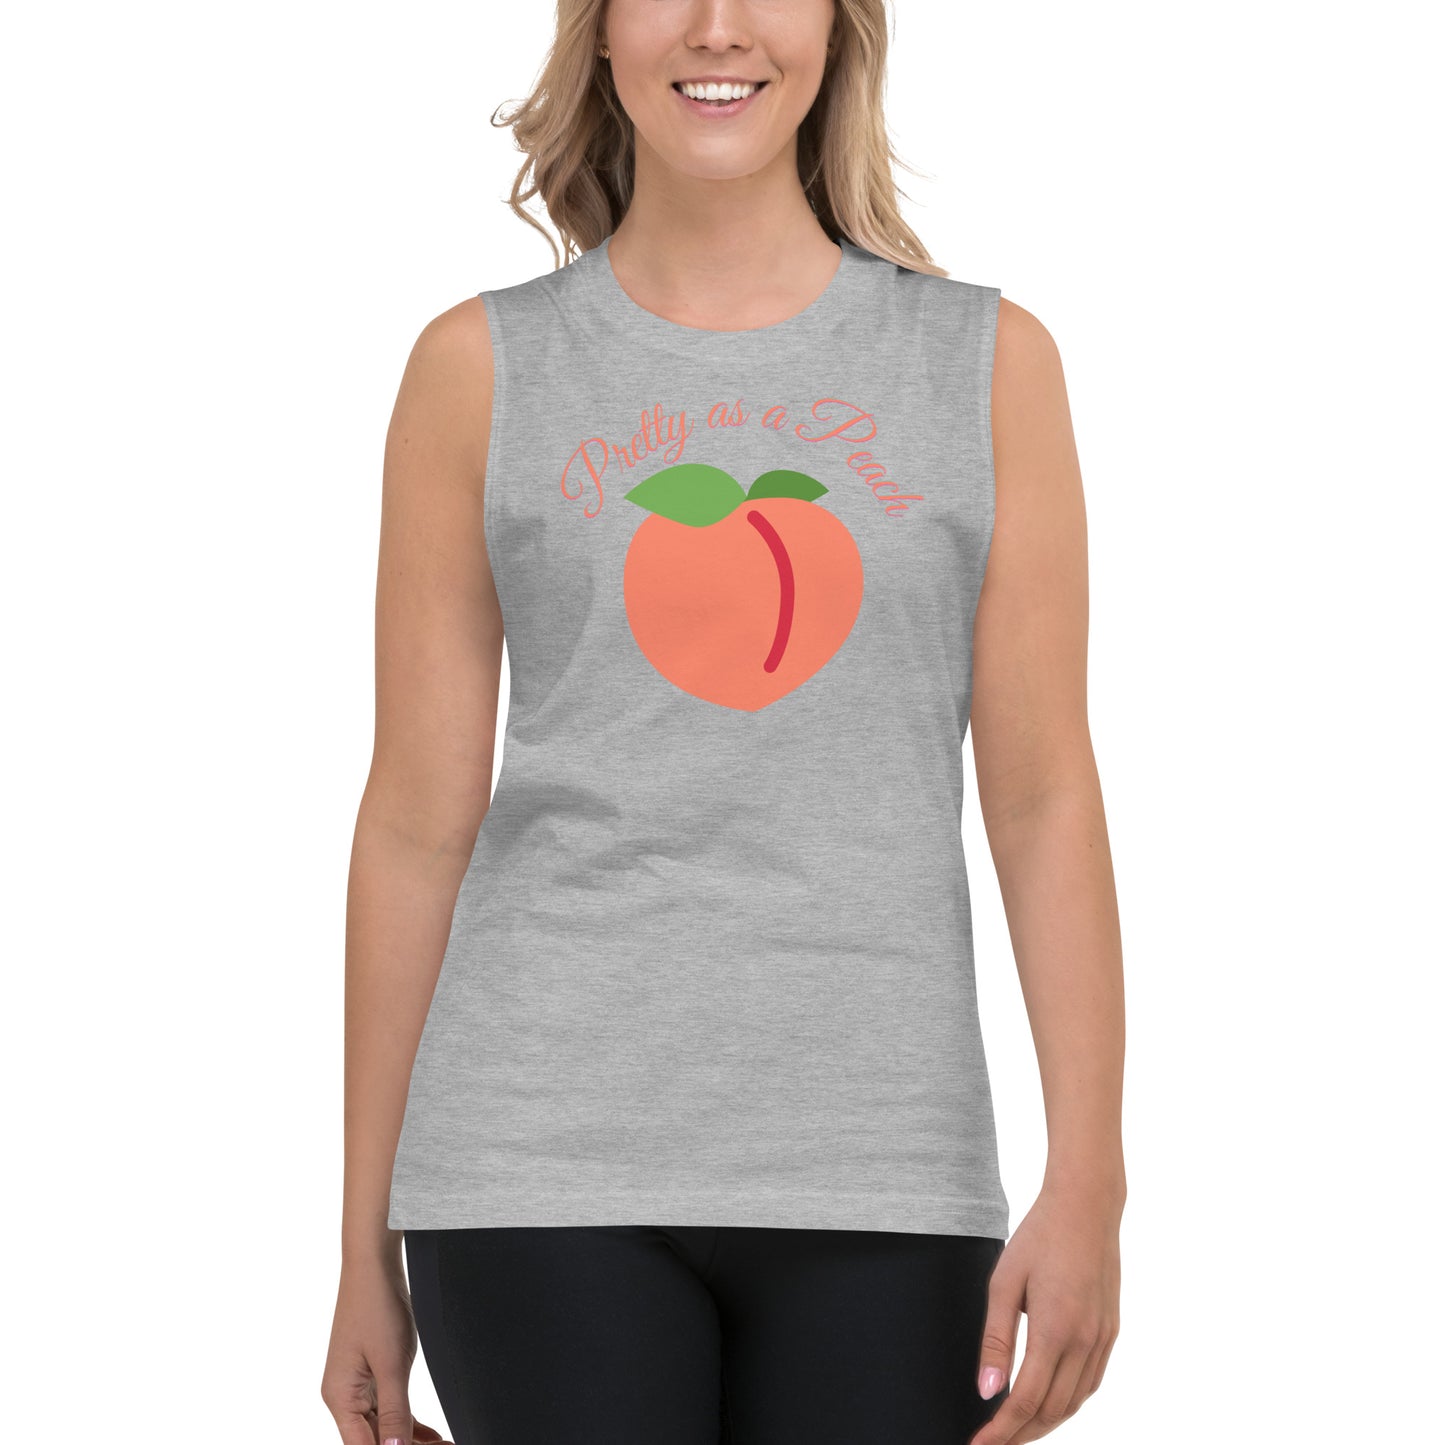 Pretty as a Peach / Unisex Muscle Shirt